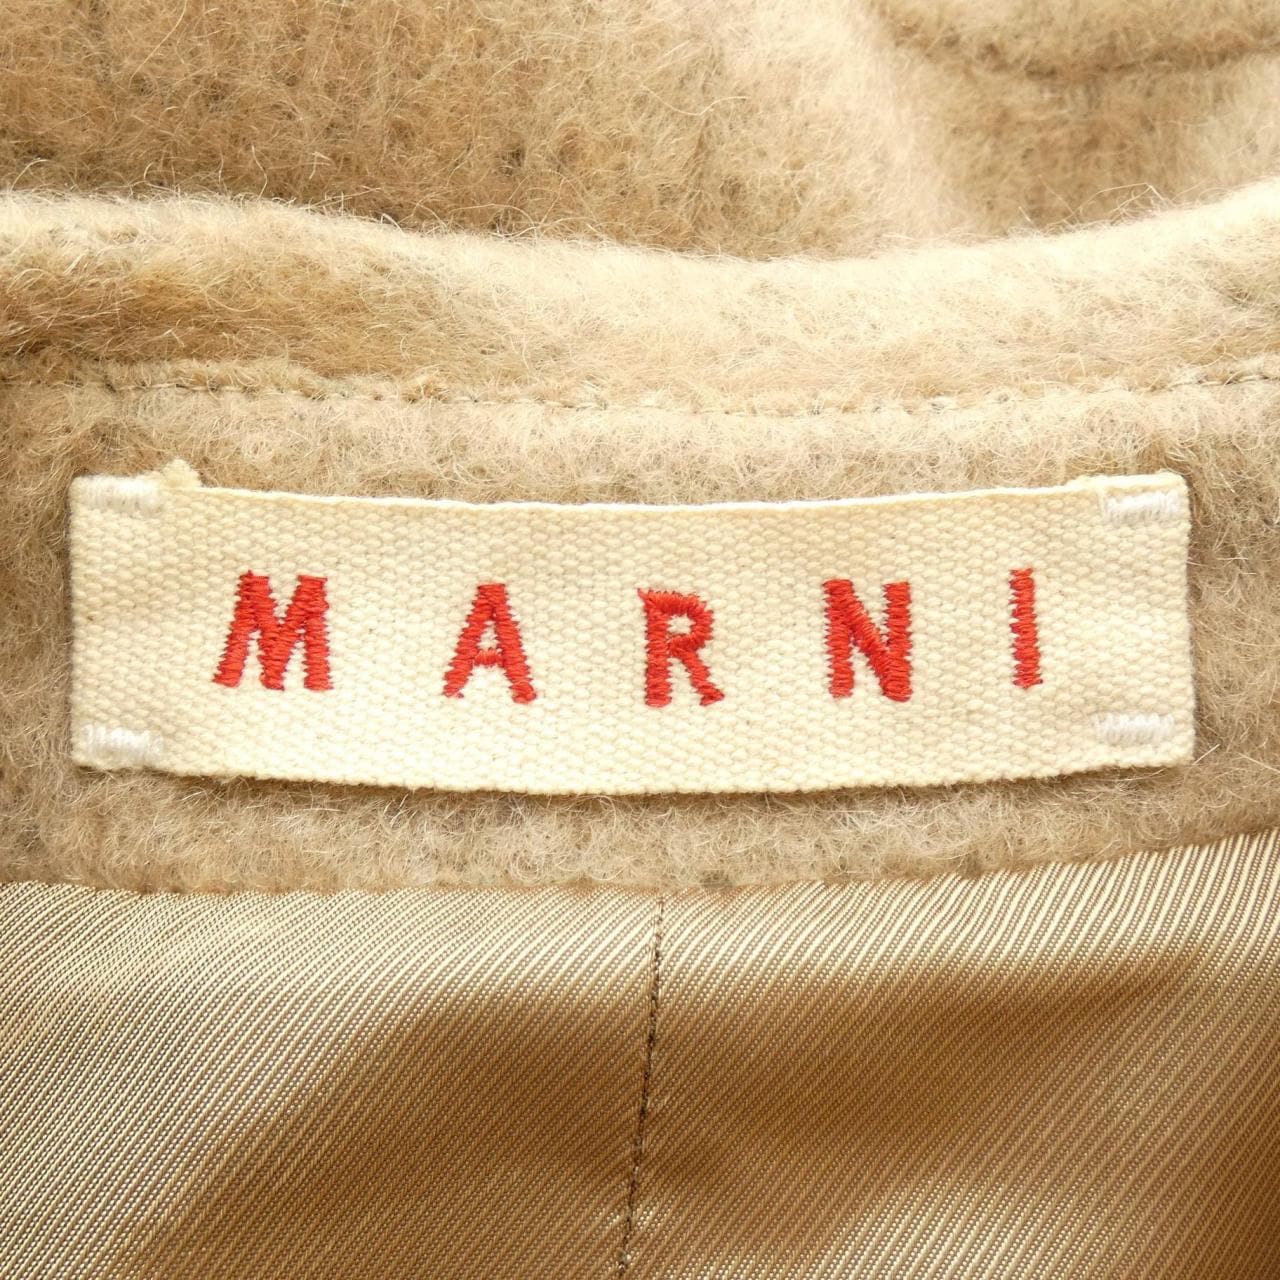 Marni coat